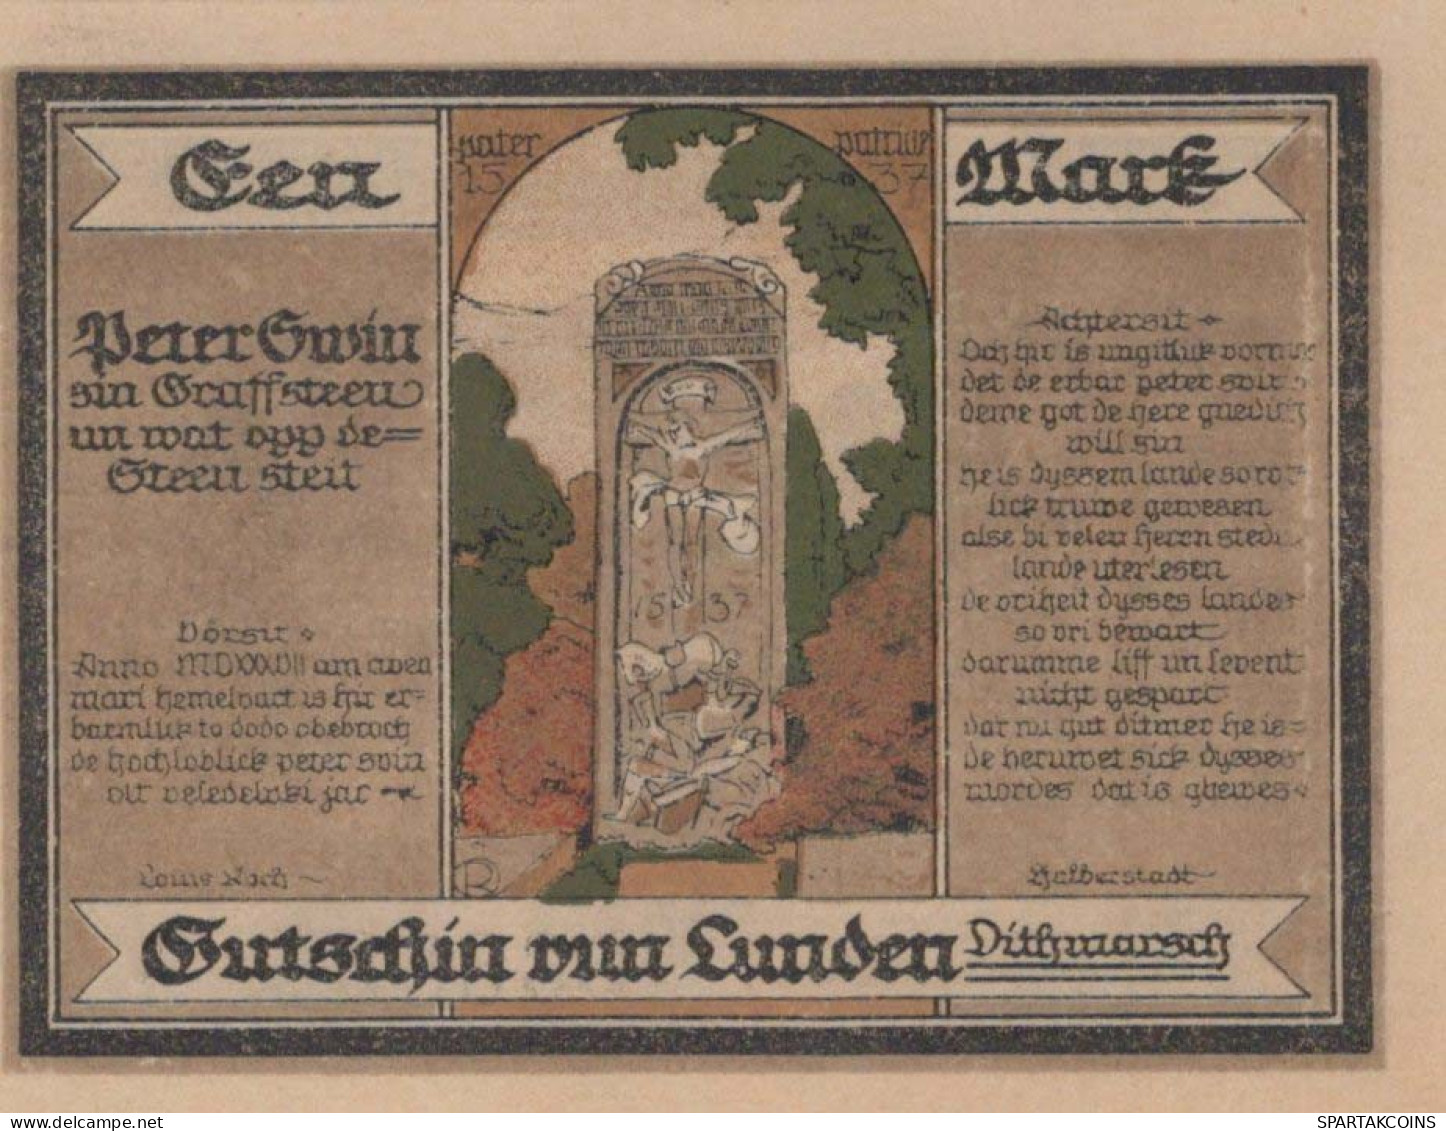 100 PFENNIG 1921 Stadt LUNDEN Schleswig-Holstein UNC DEUTSCHLAND Notgeld #PC659 - [11] Local Banknote Issues